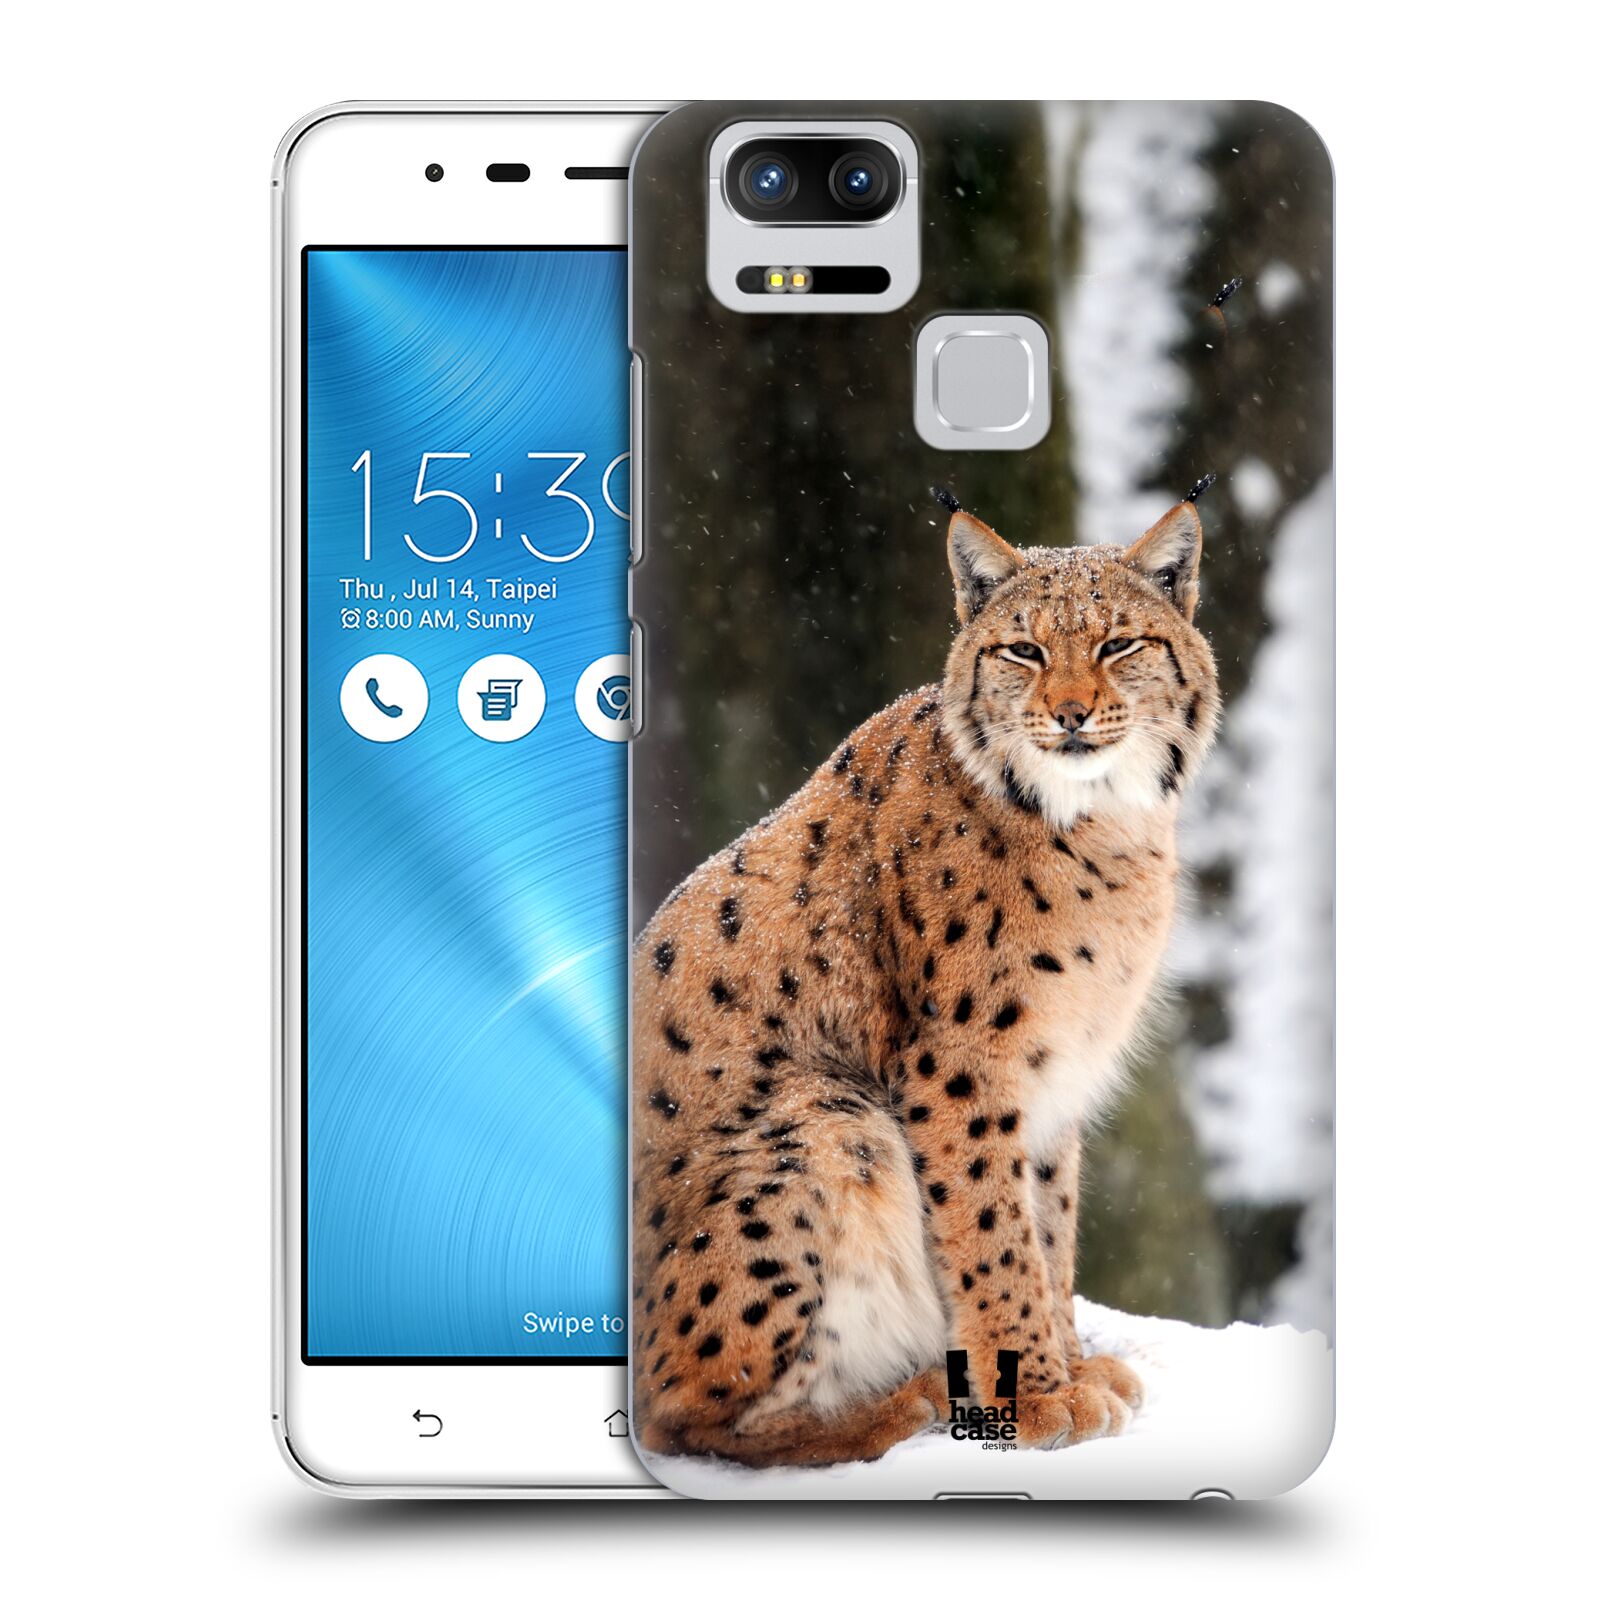 HEAD CASE plastový obal na mobil Asus Zenfone 3 Zoom ZE553KL vzor slavná zvířata foto rys